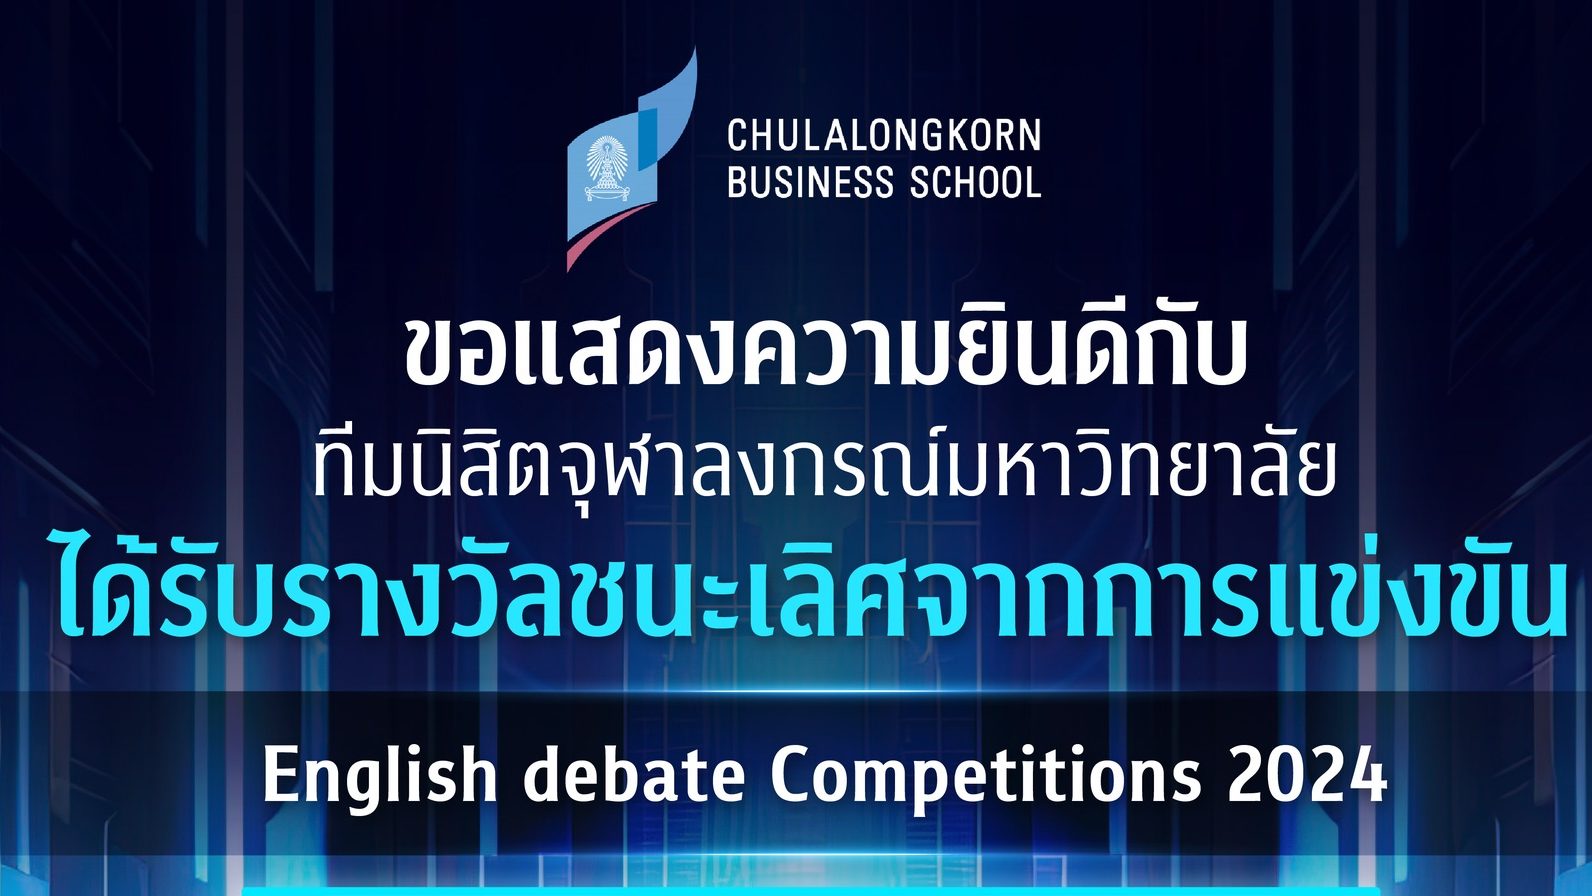 นิสิตจุฬาฯ คว้ารางวัลชนะเลิศและรางวัล Best speaker จากการแข่งขัน English debate Competitions 2024